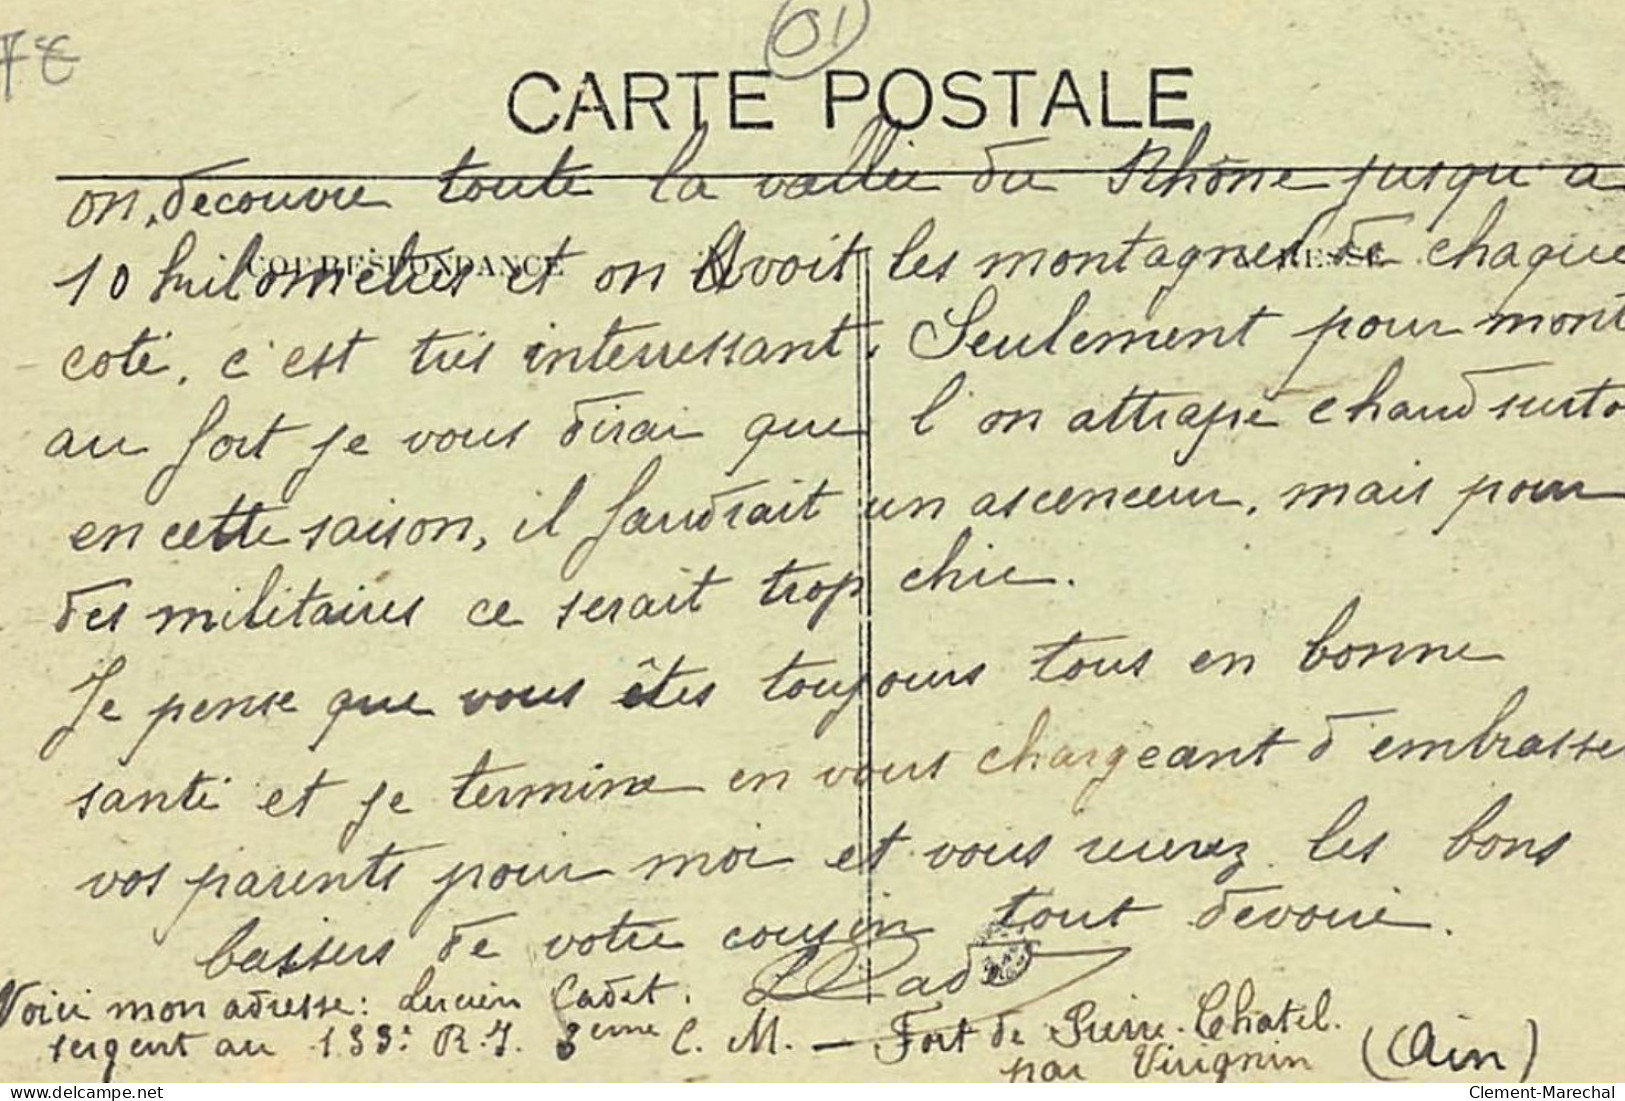 PIERRE-CHATEL : Vallée Du Rhone Et Fort De Pierre-chatel - Tres Bon Etat - Unclassified